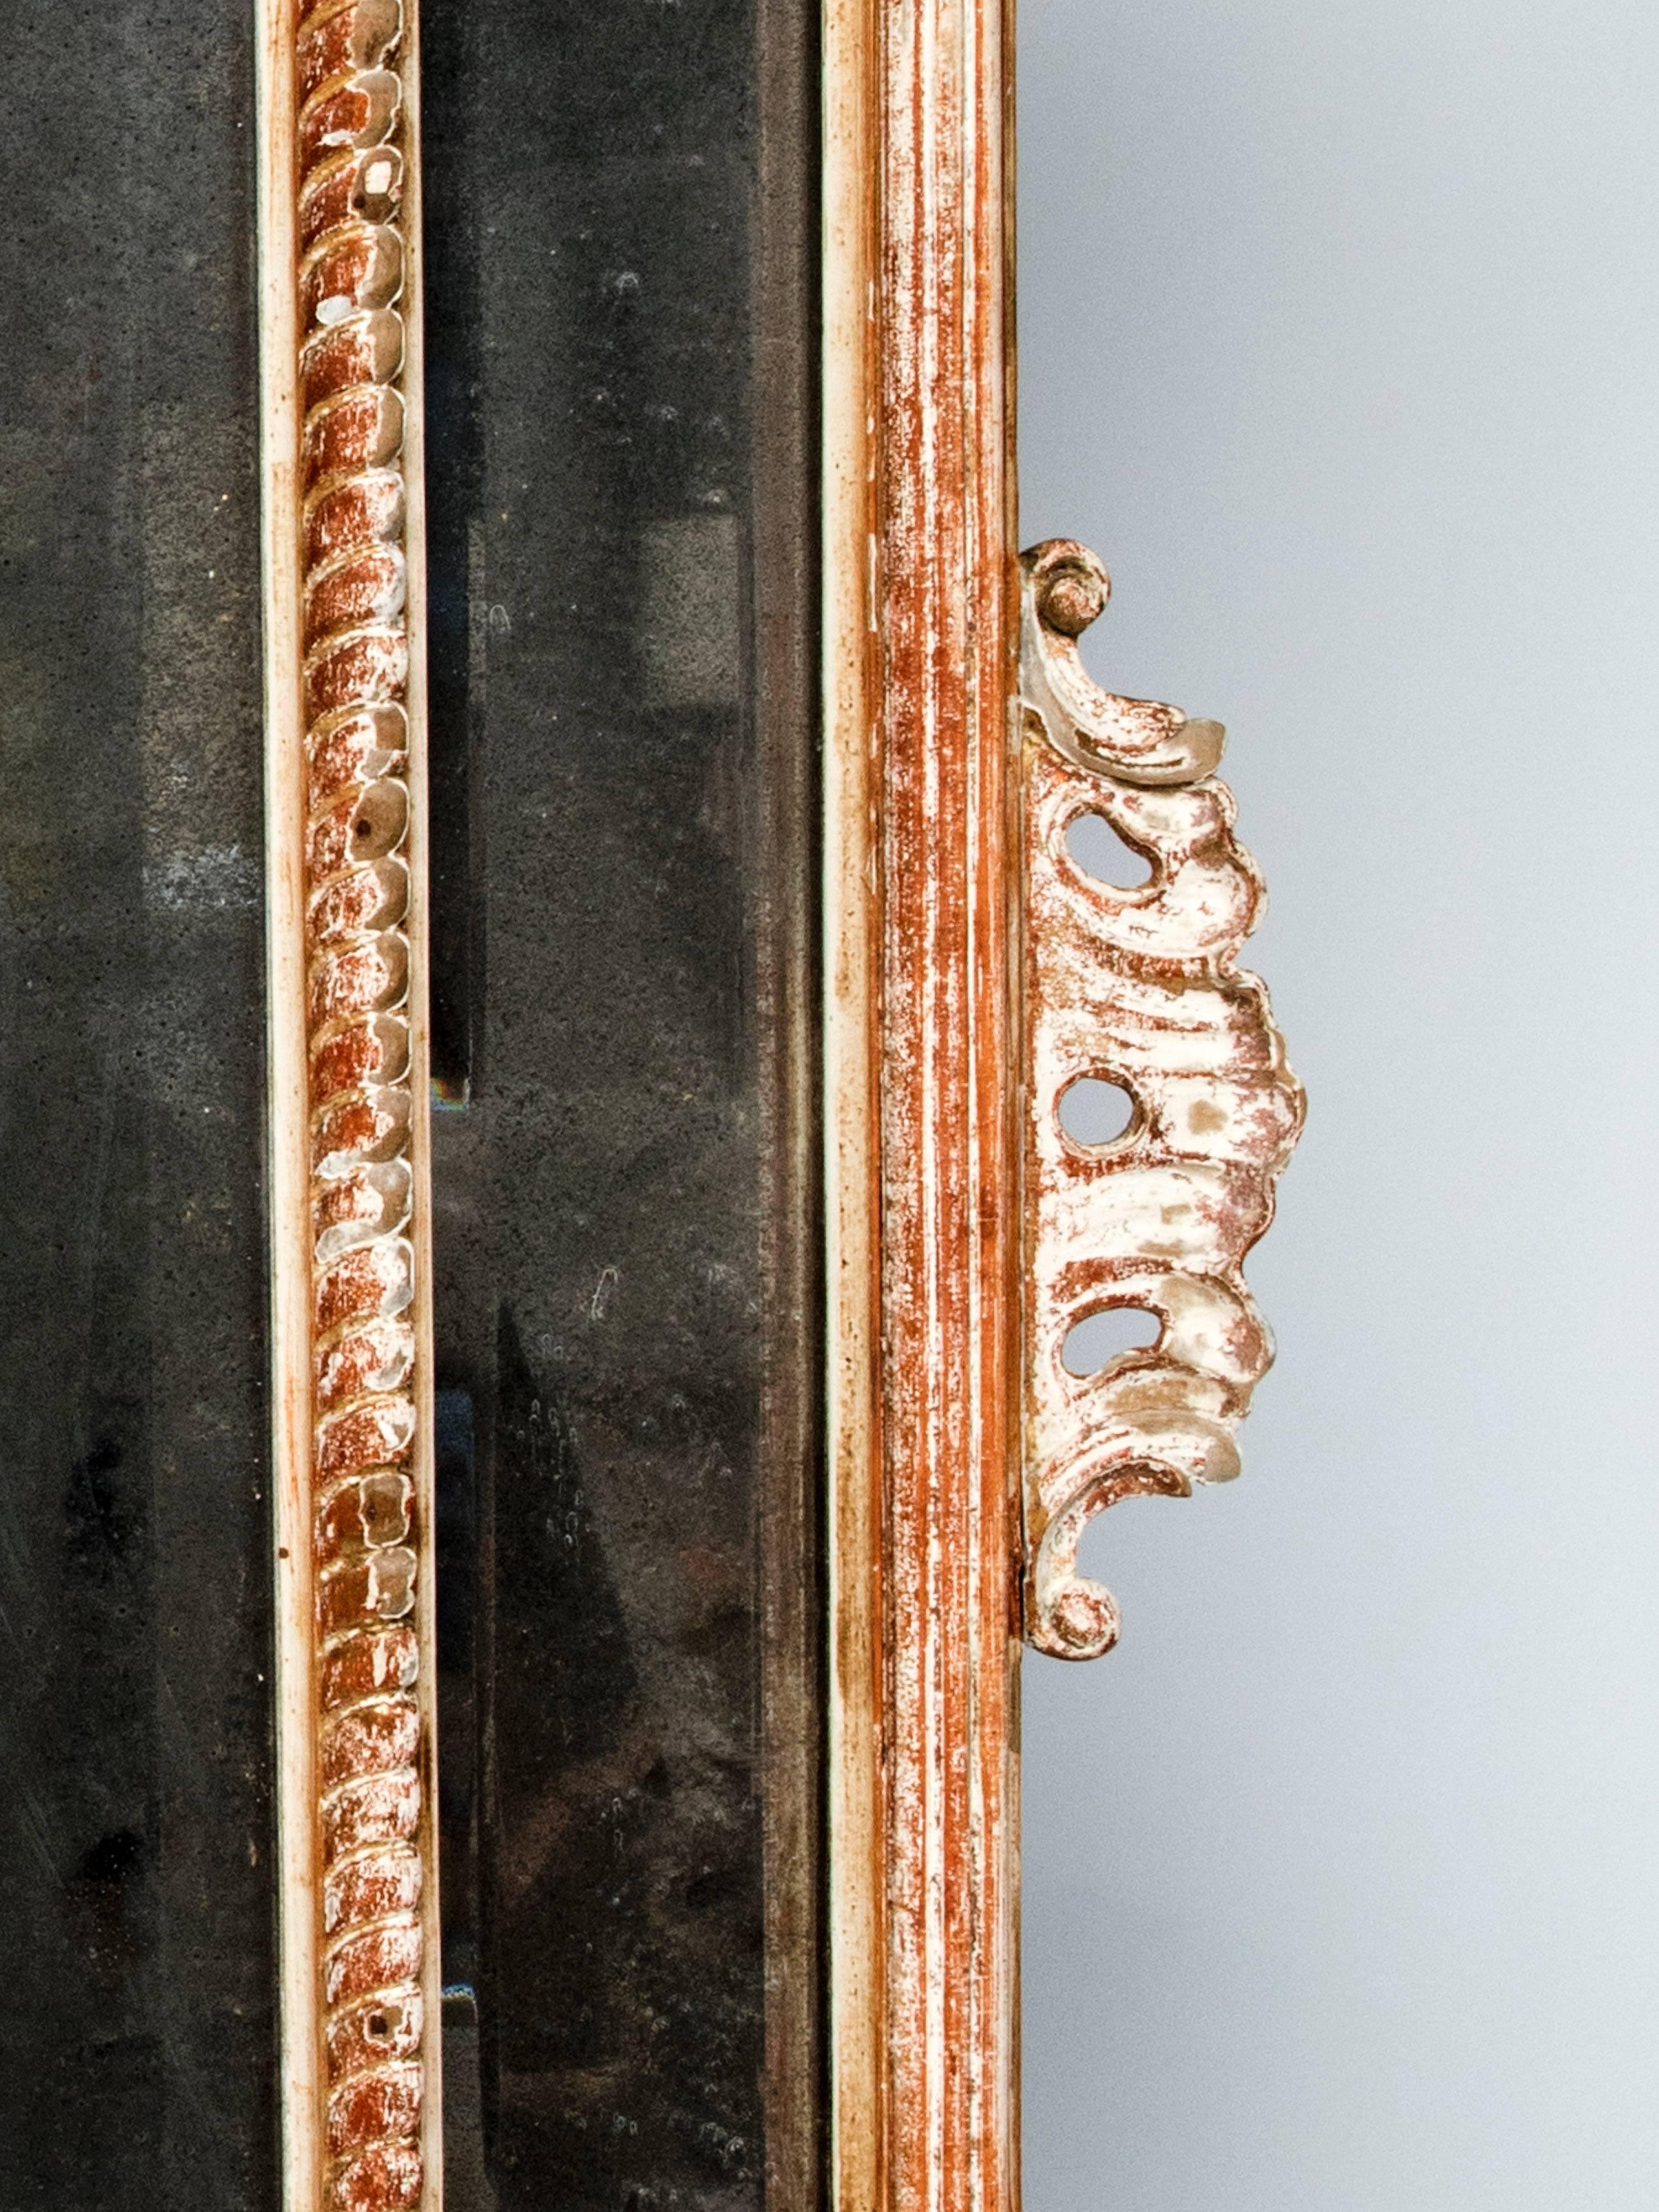 Un très beau grand miroir en bois sculpté, le miroir lui-même est très dépoli.
Superbe coquille sculptée au sommet, très décorative.
La feuille d'or dans certaines parties est usée.